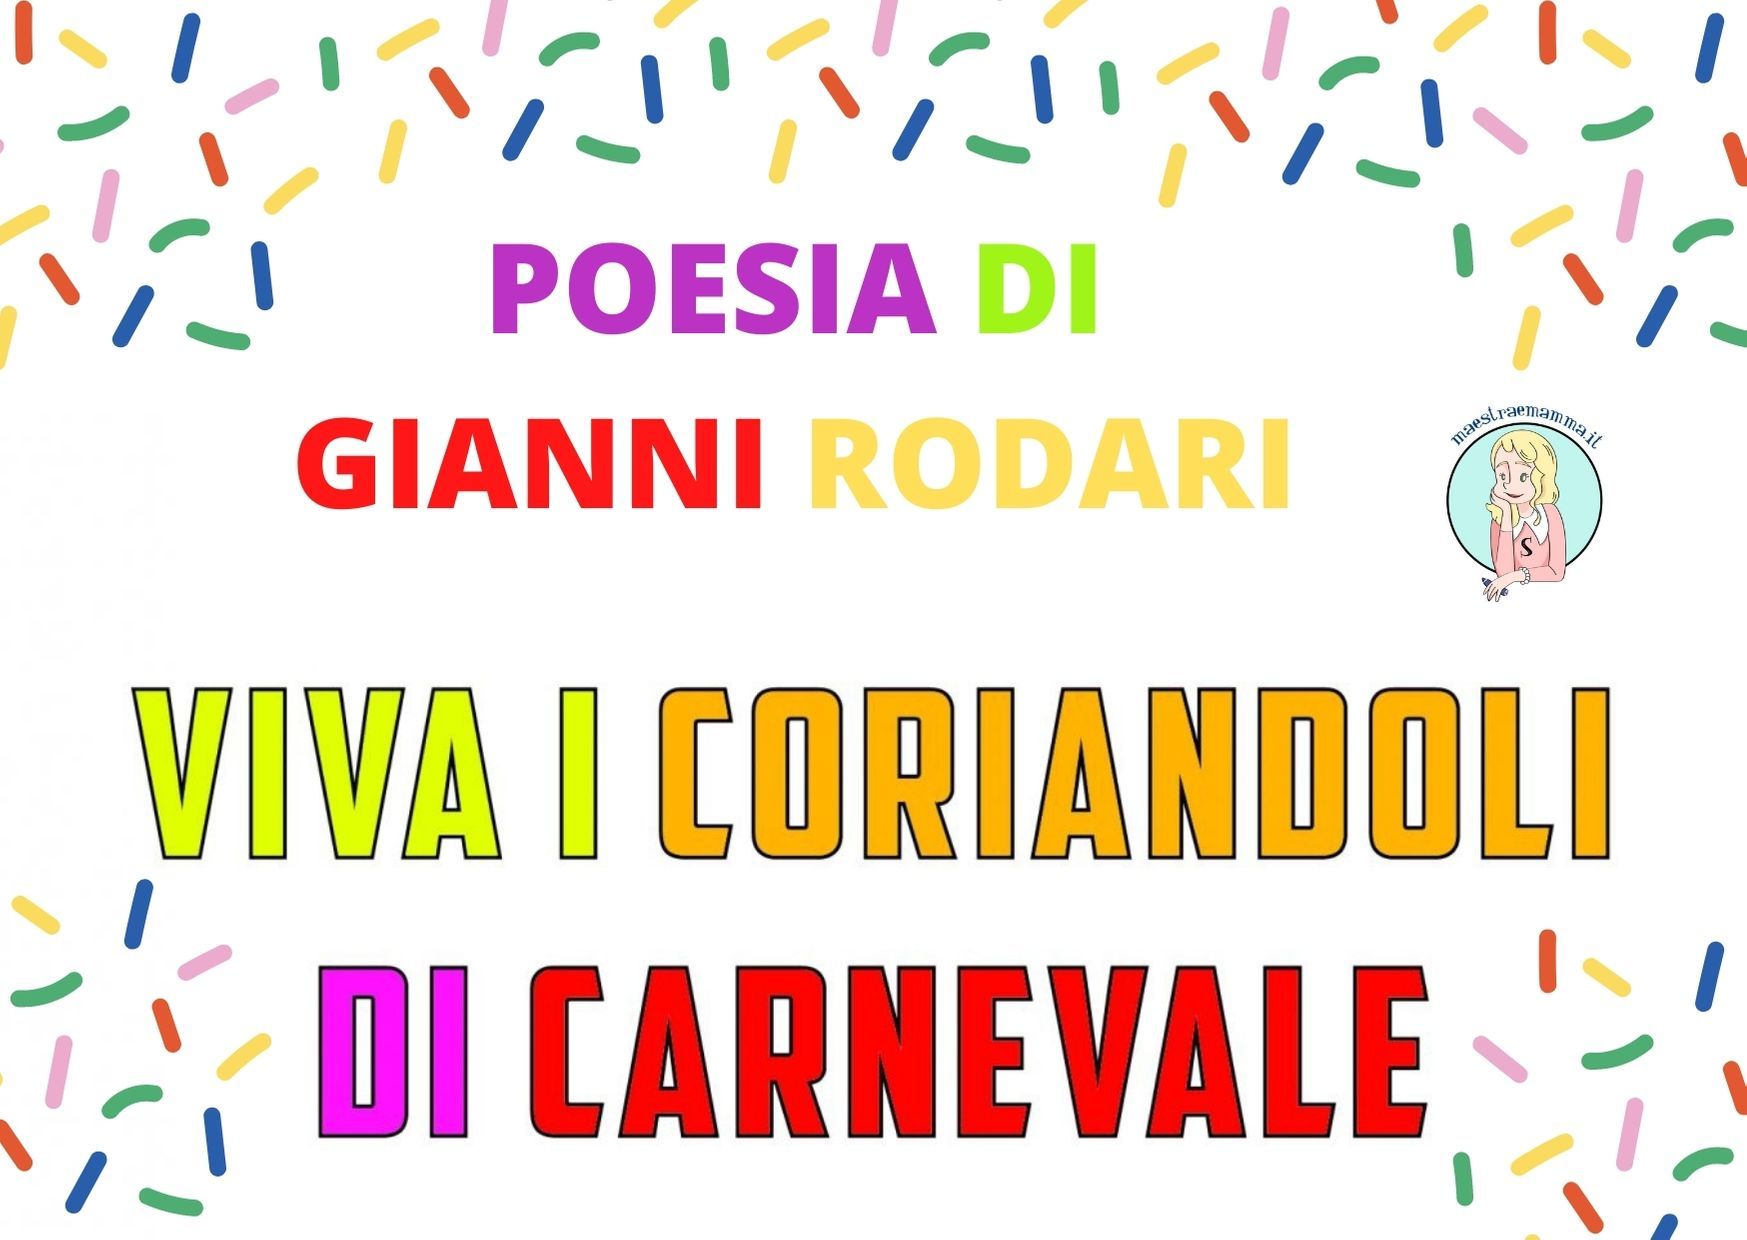 "Viva i coriandoli di Carnevale" poesia di Gianni Rodari